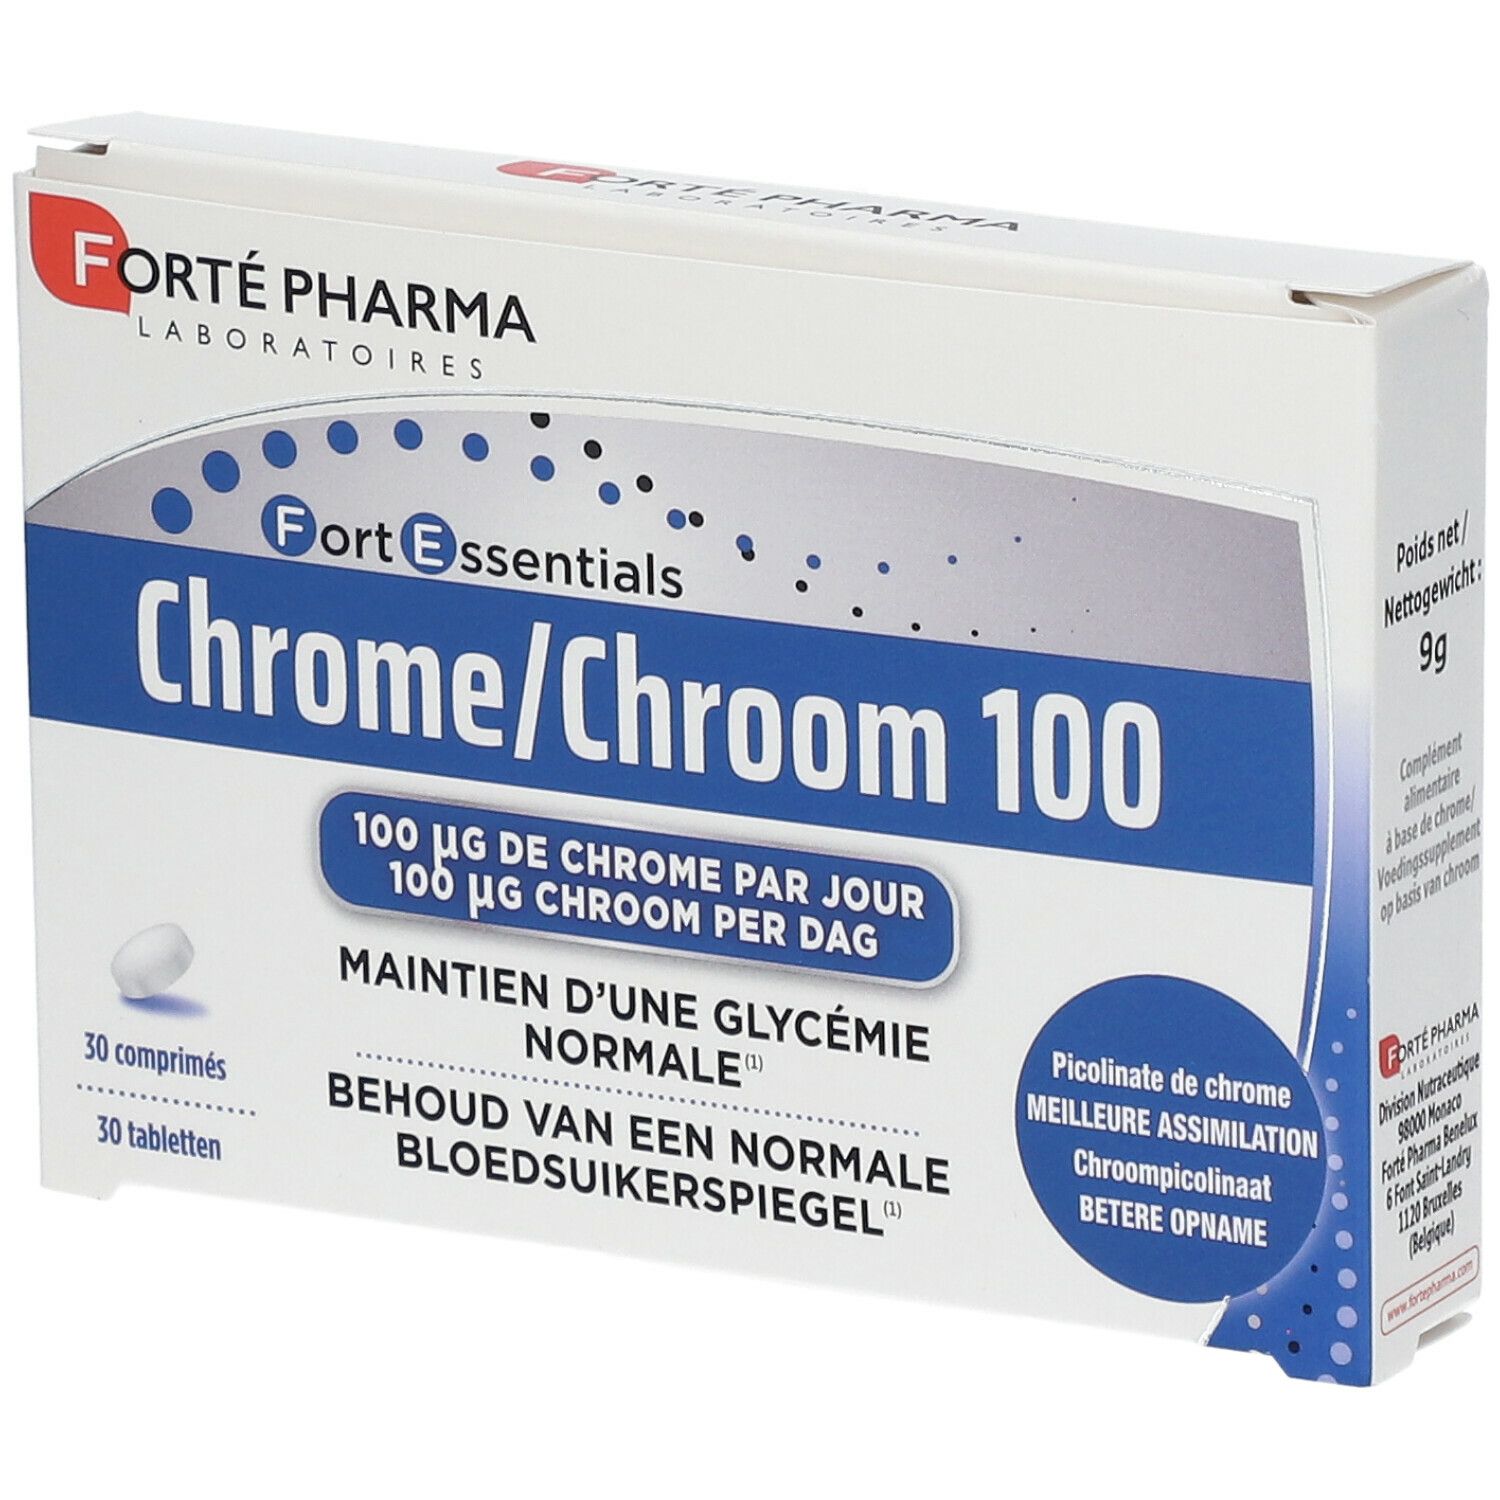 Image of Forté Pharma Chrom 100